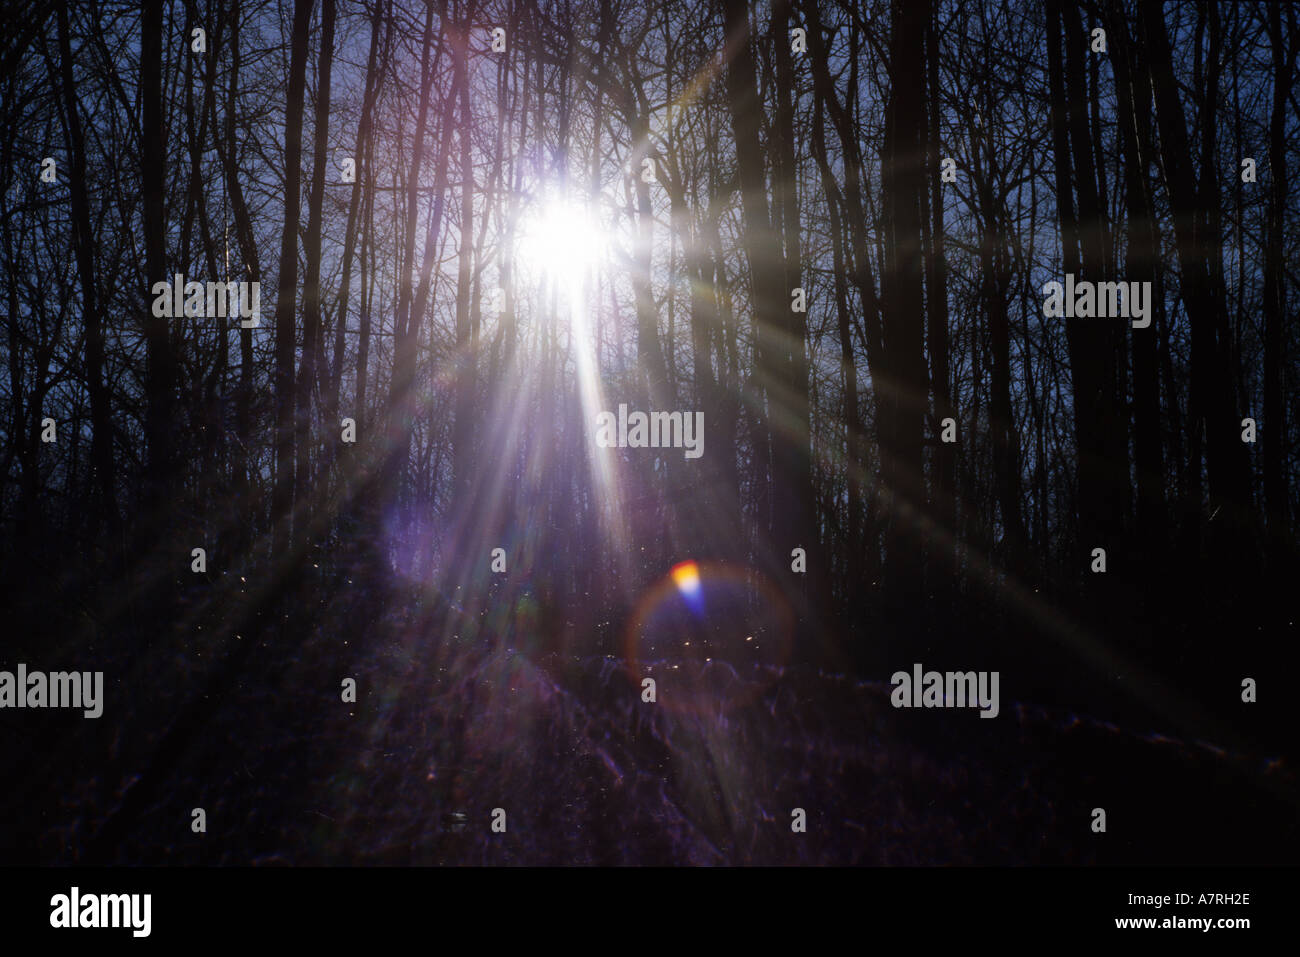 La luce del sole streaming attraverso gli alberi nei boschi formano un modello a stella Foto Stock